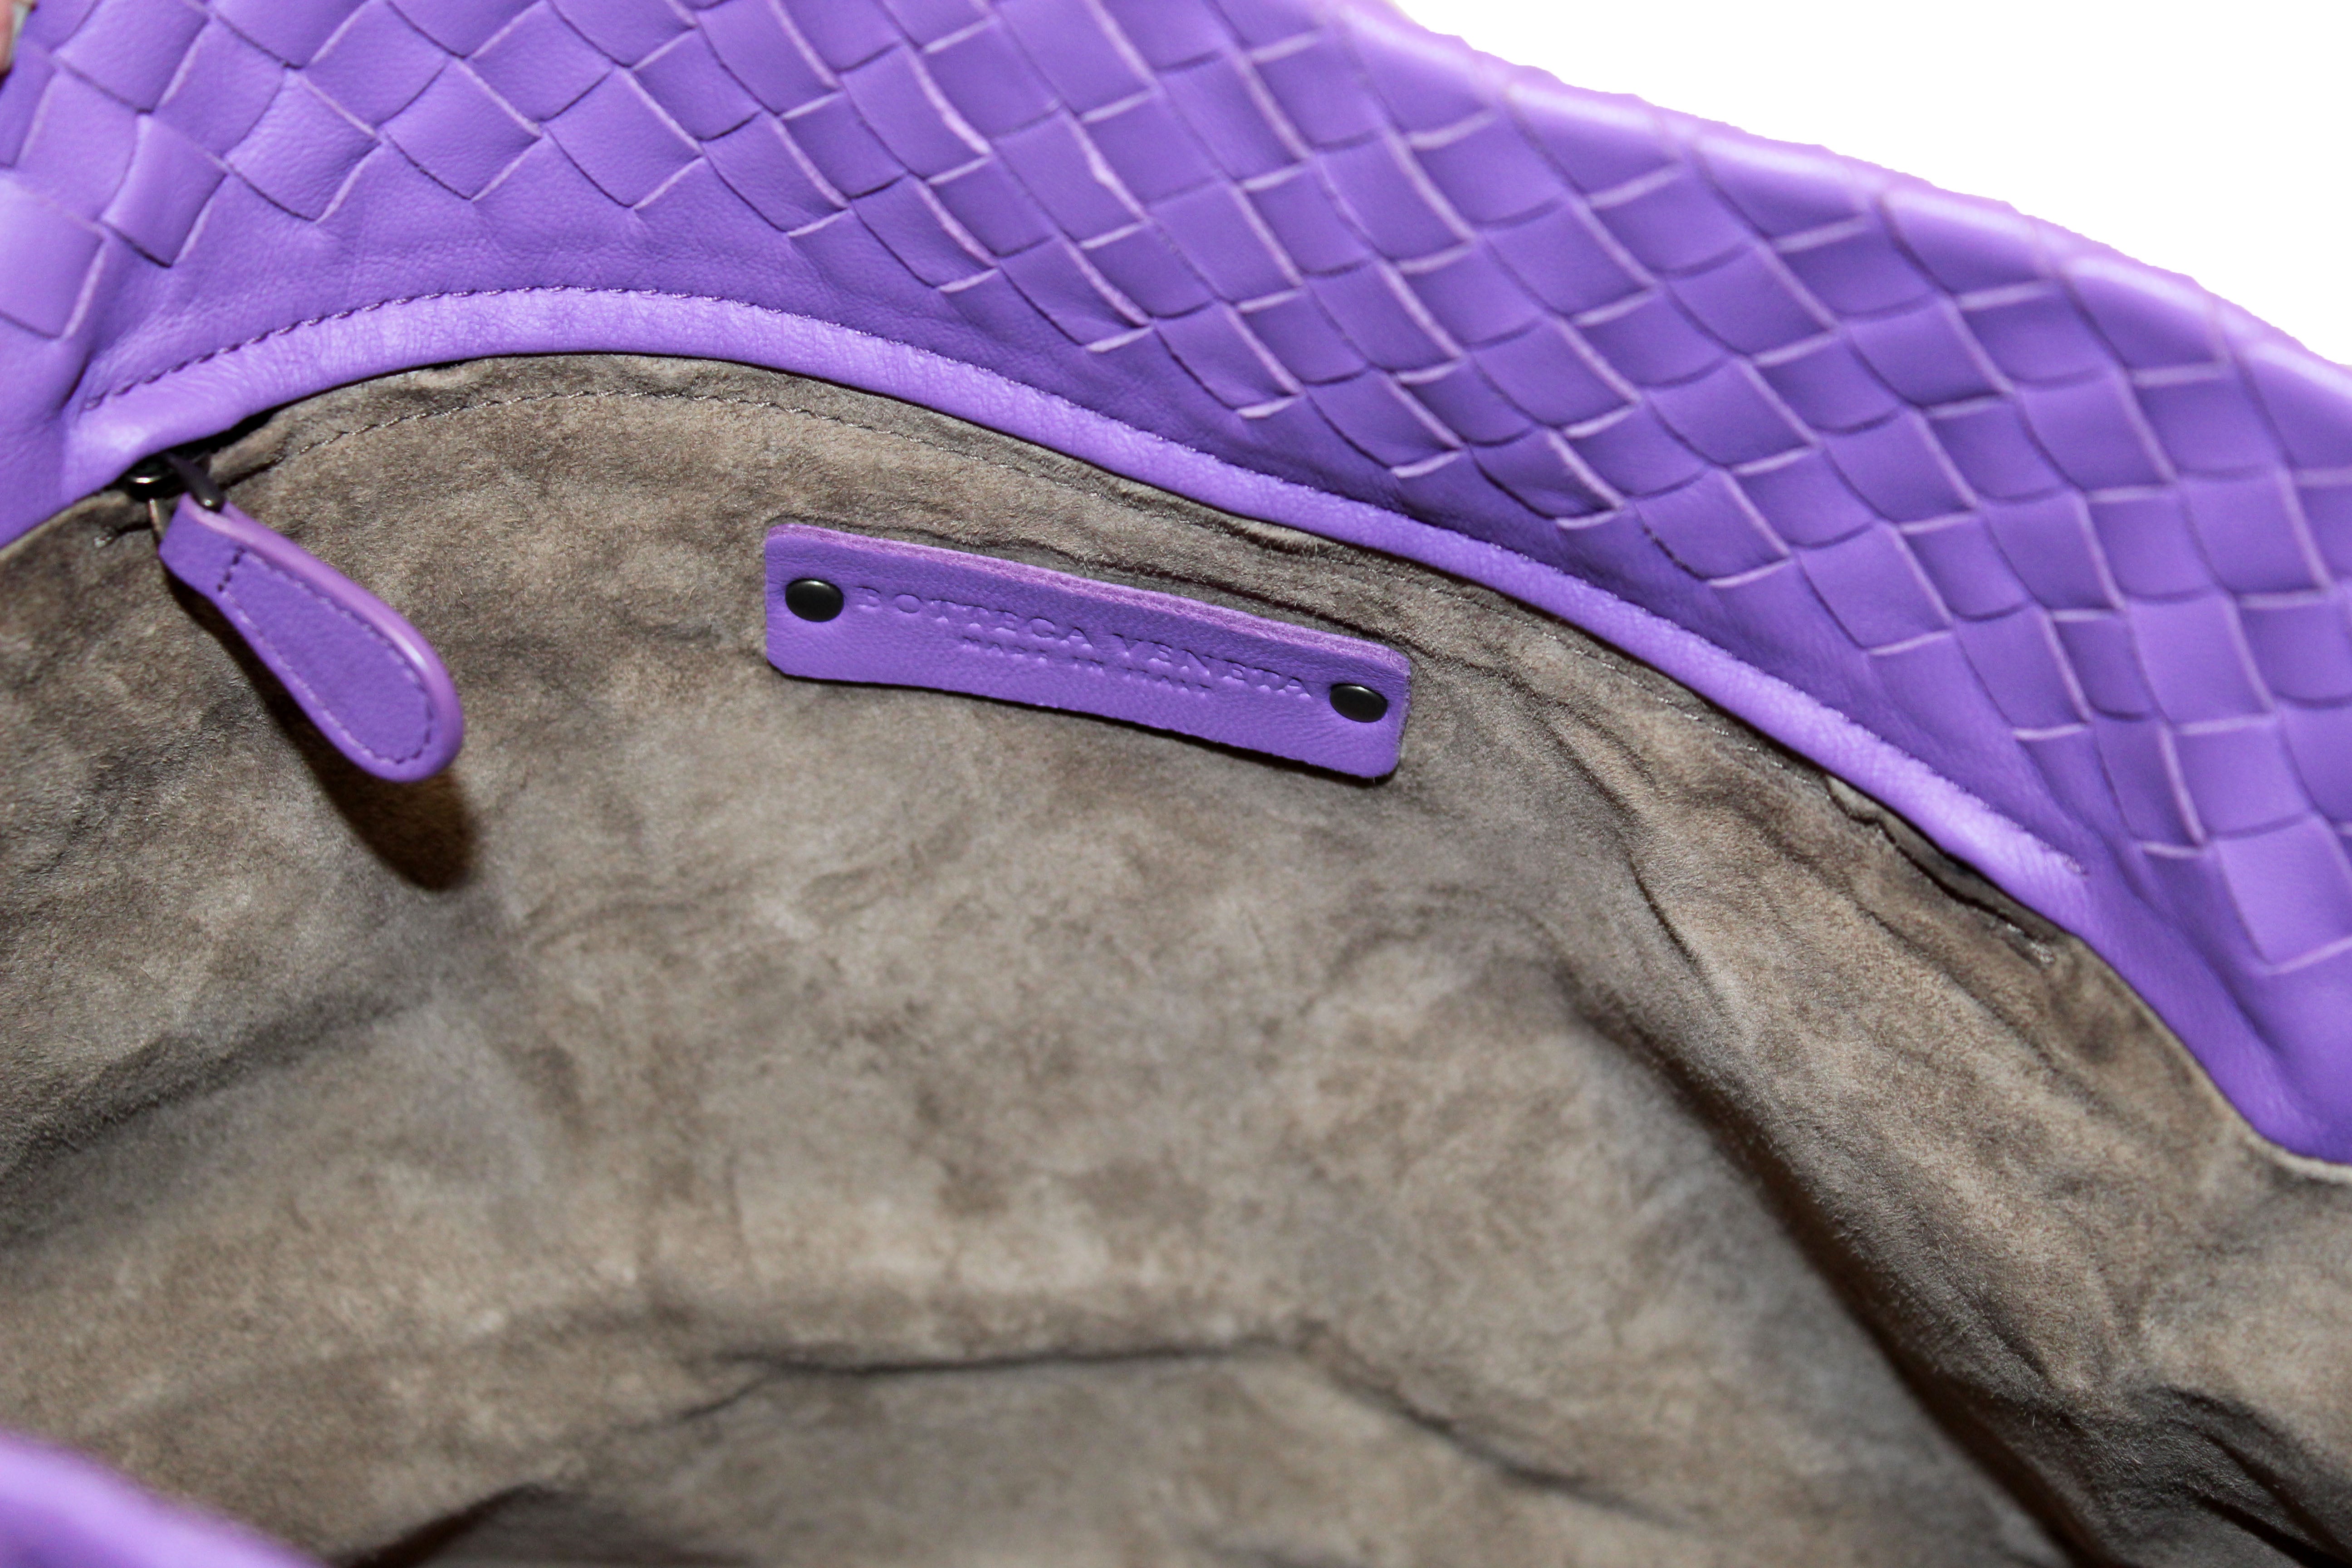 Bottega Veneta Medium Hobo Intrecciato Shoulder Bag in Lavender